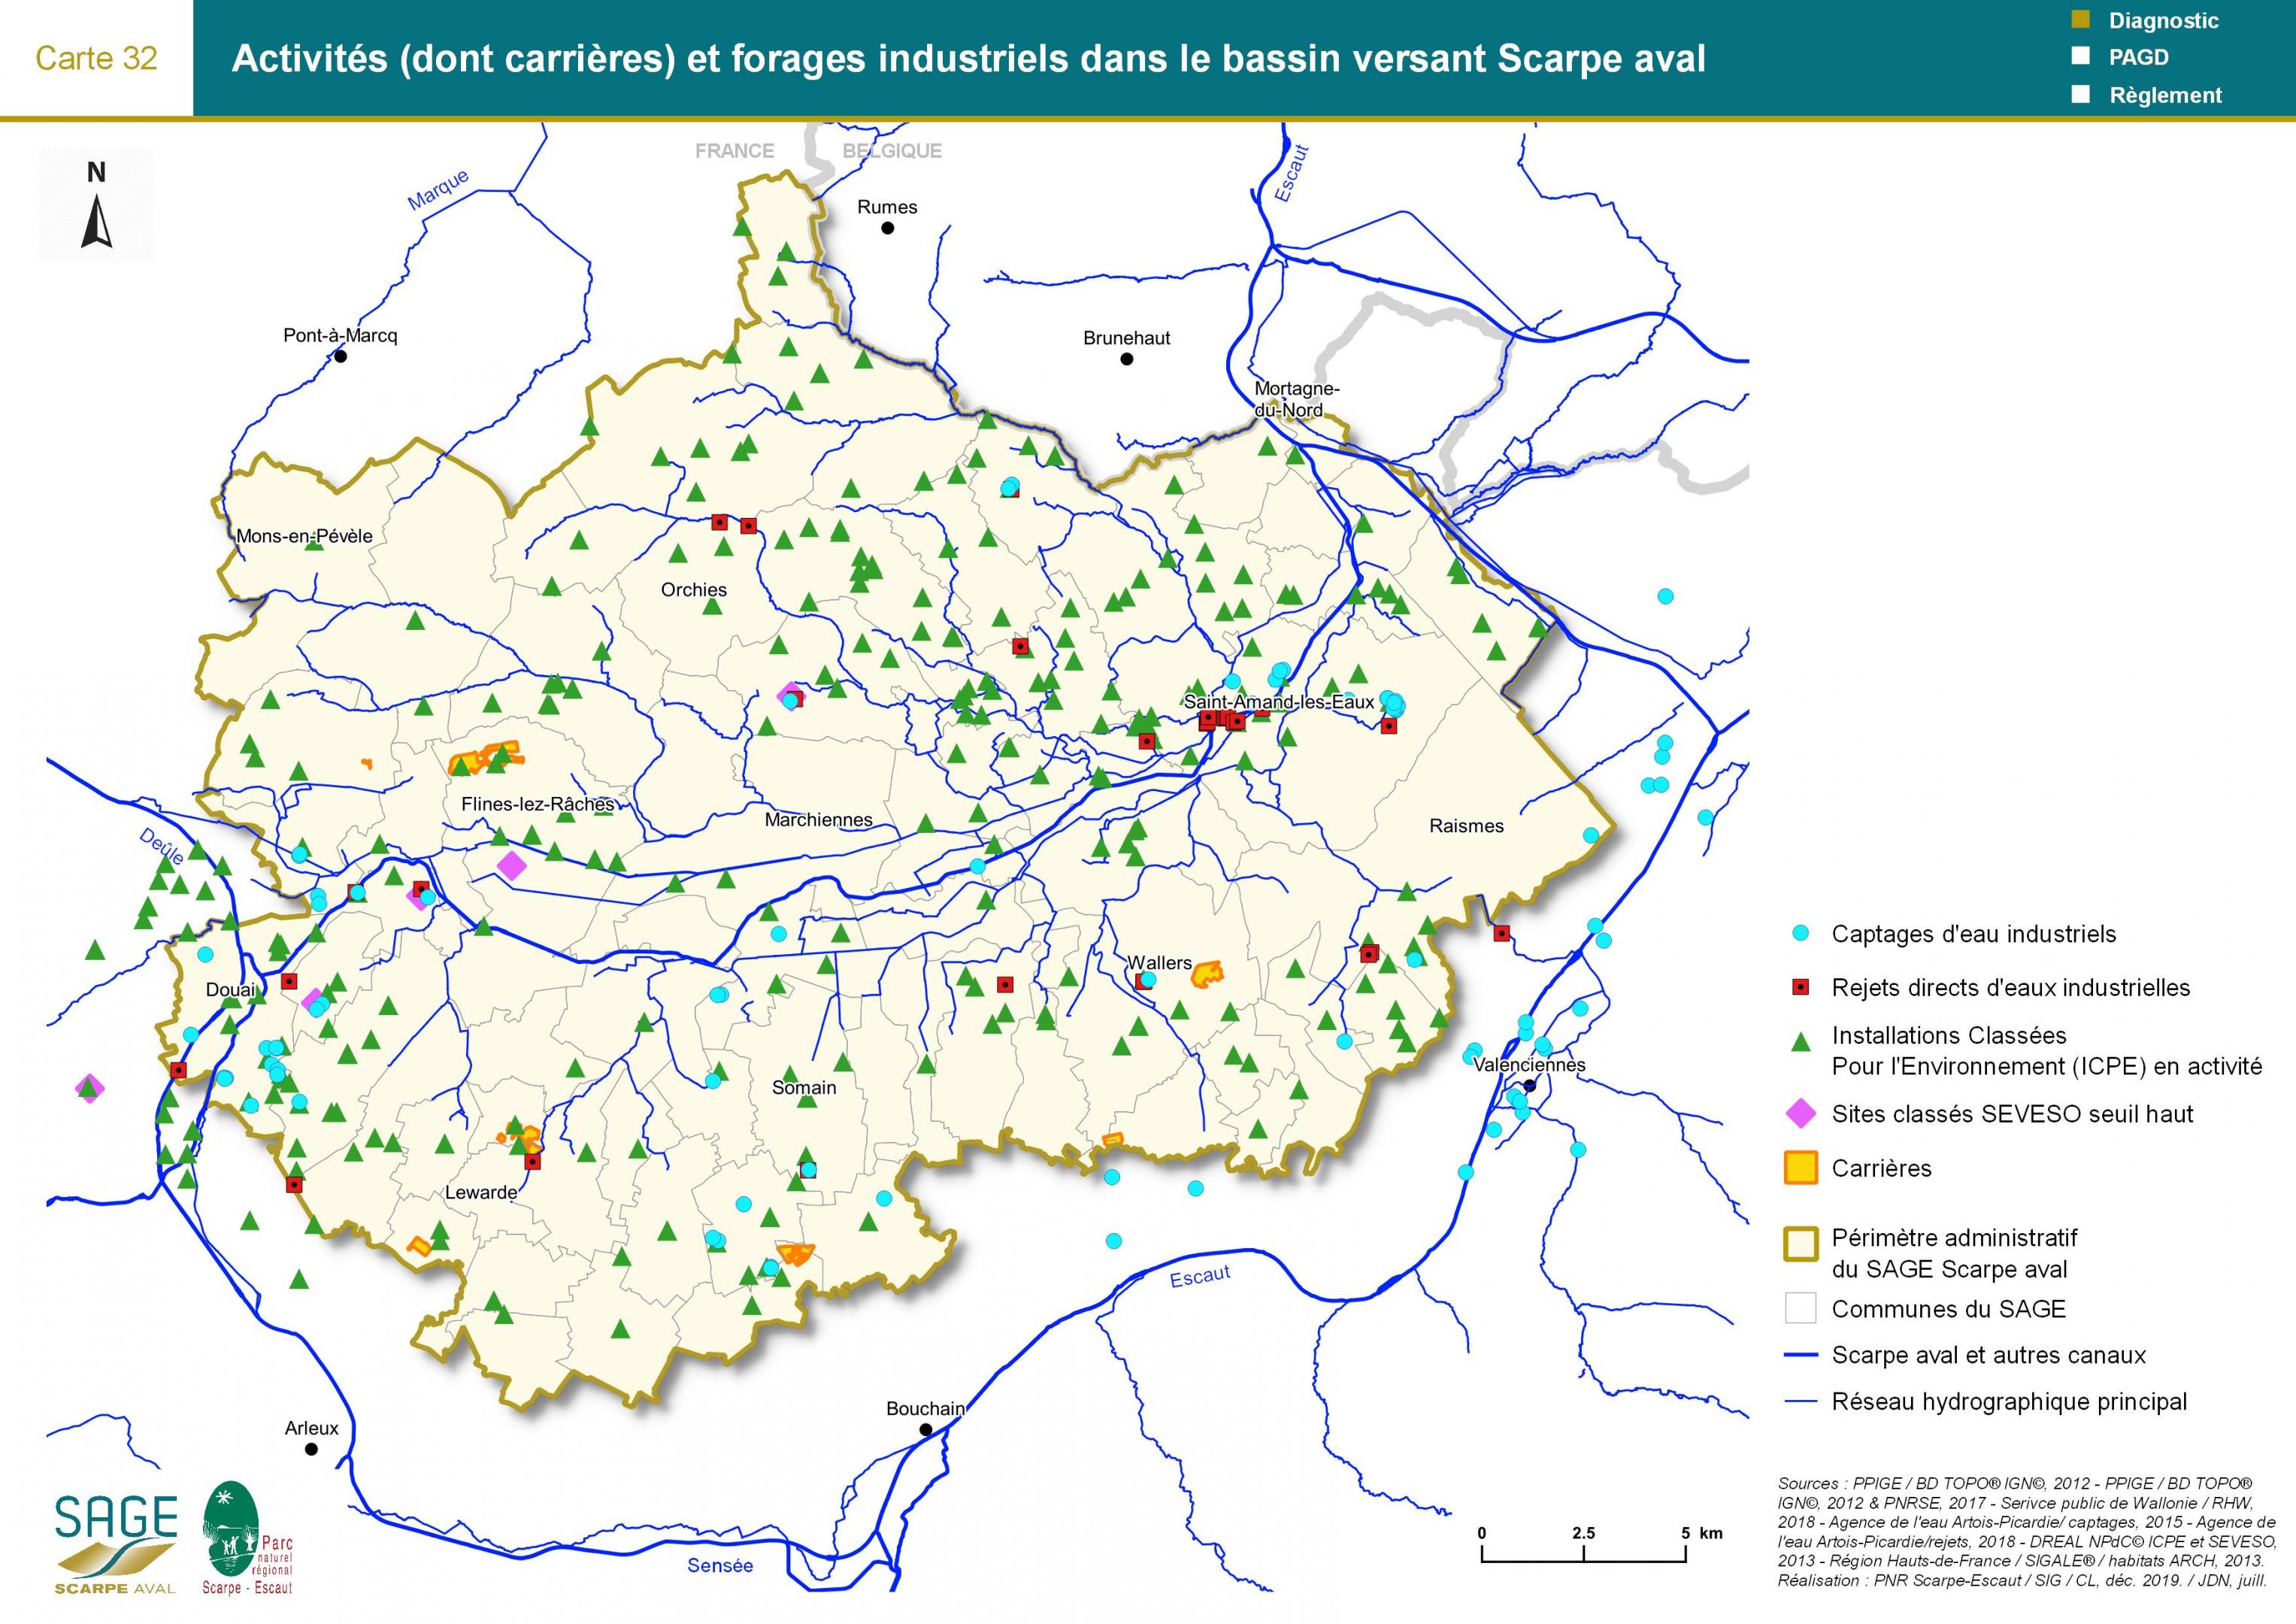 Etat des lieux - Carte 32 : Activités (dont carrières) et forages industriels dans le bassin versant Scarpe aval